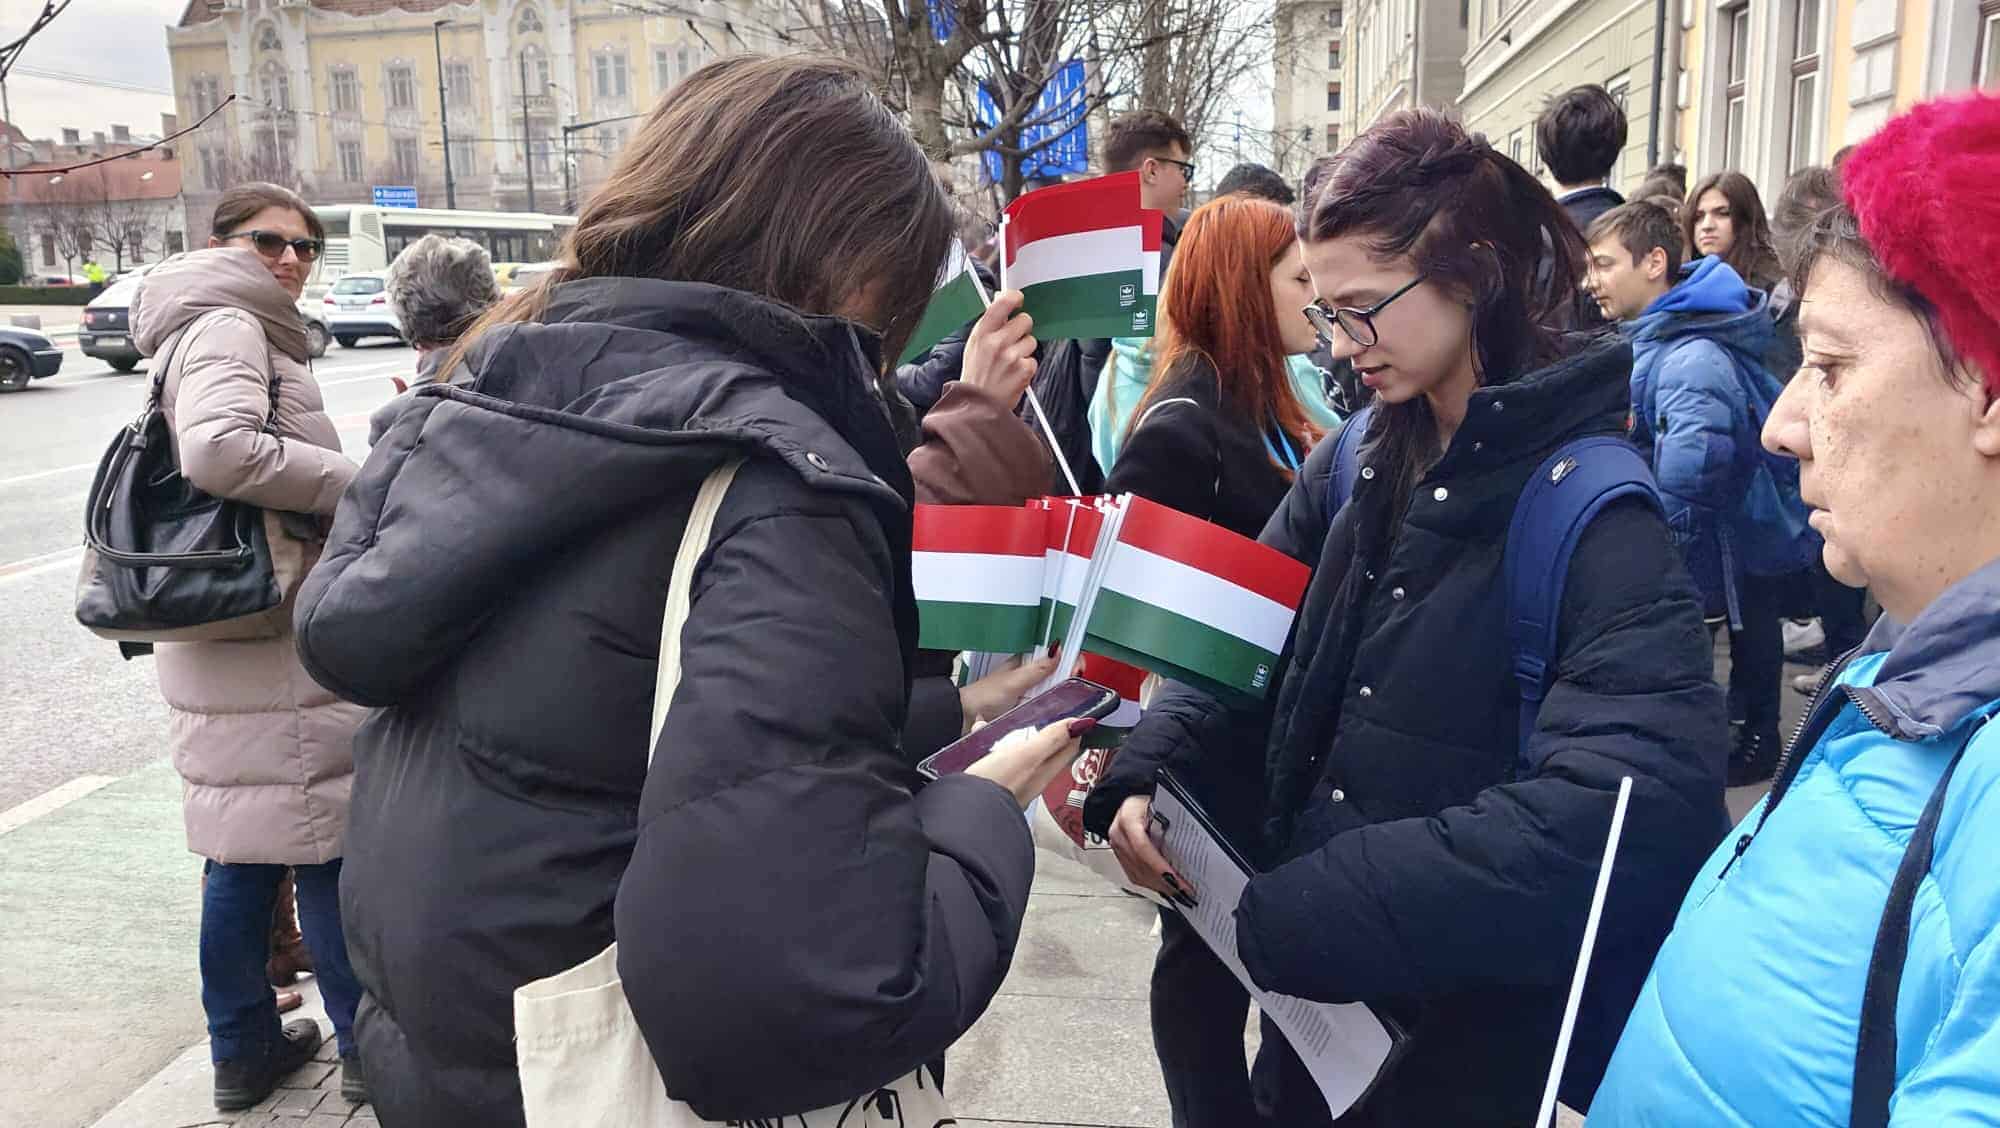 emil boc, mesaj de ziua maghiarilor de pretutindeni: Împreună putem